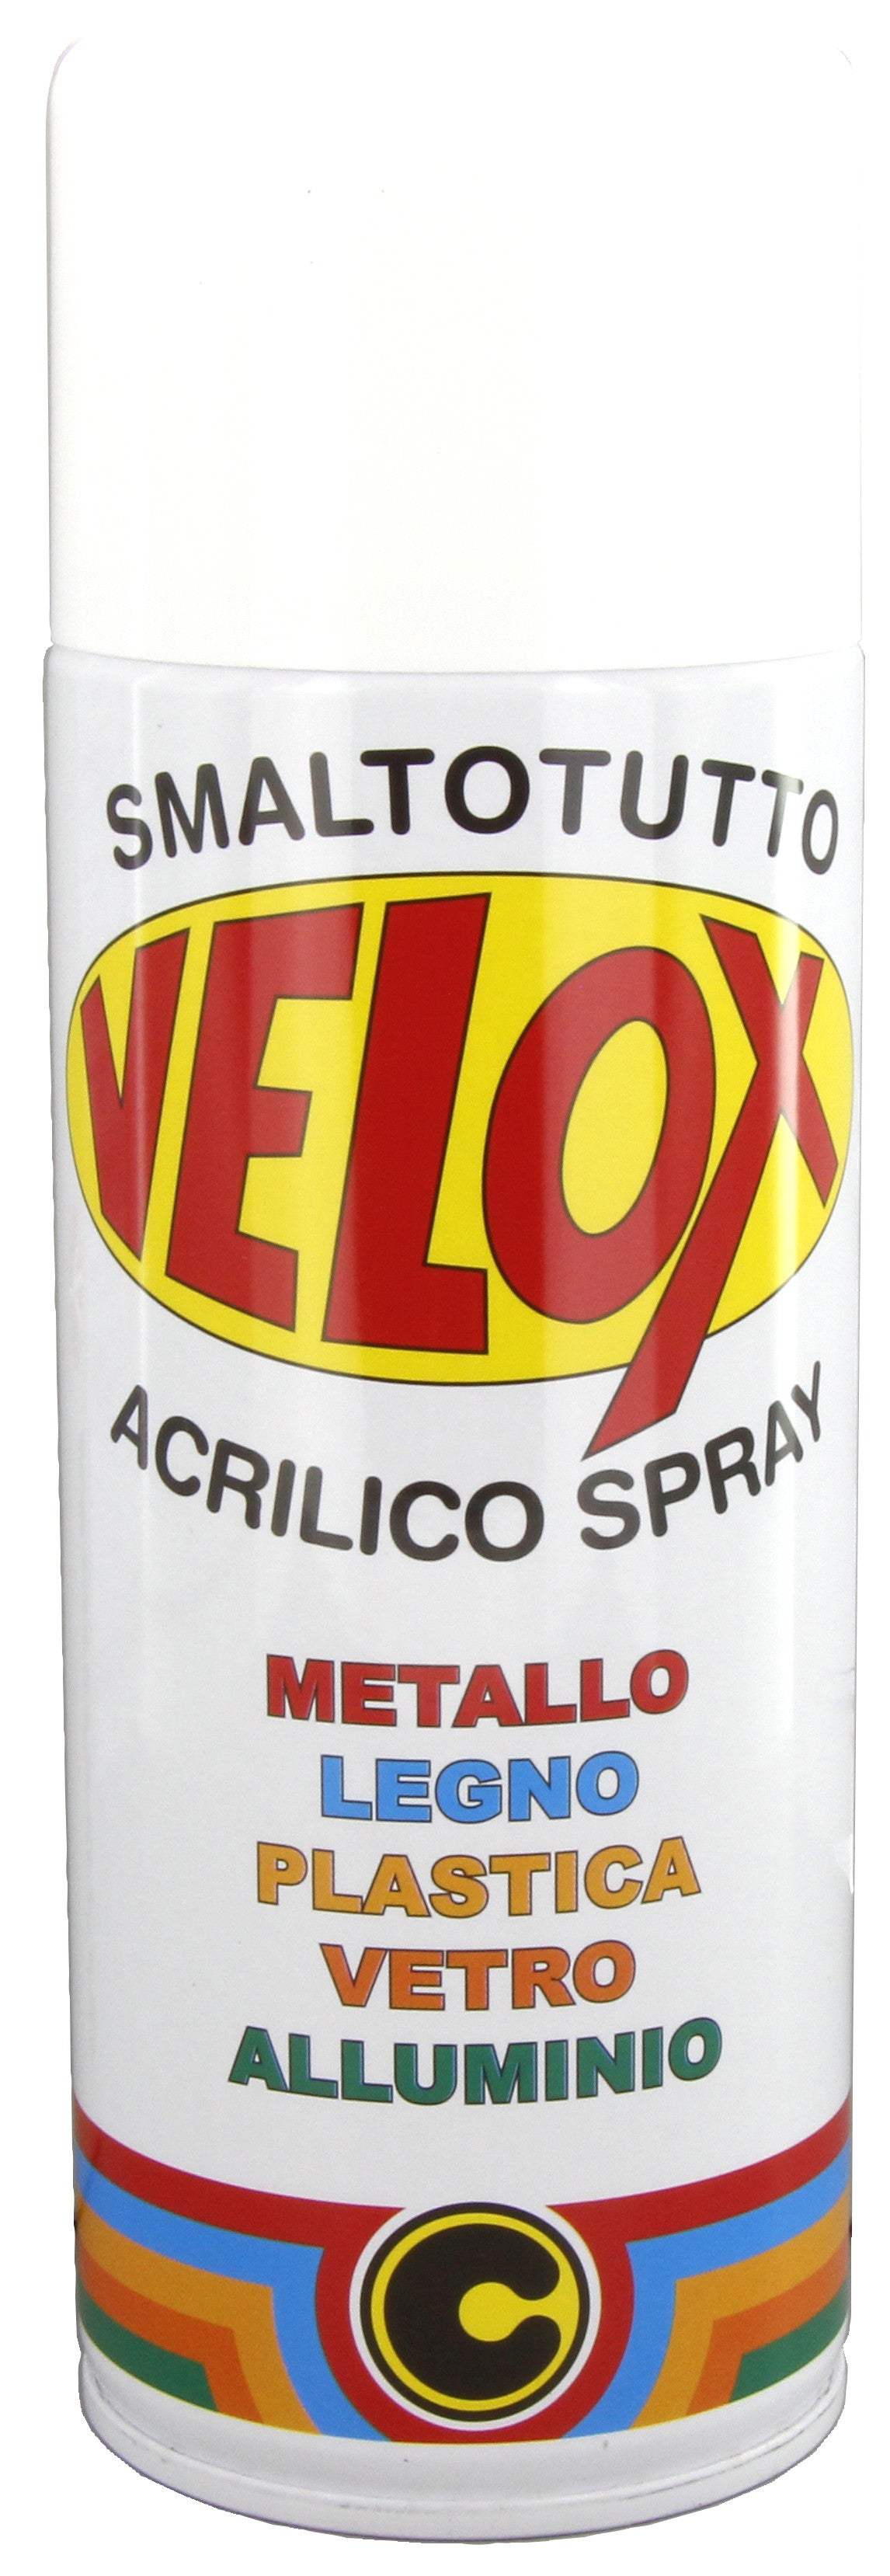 Velox spray acrilico bianco elettrodomestici ITAL G.E.T.E.